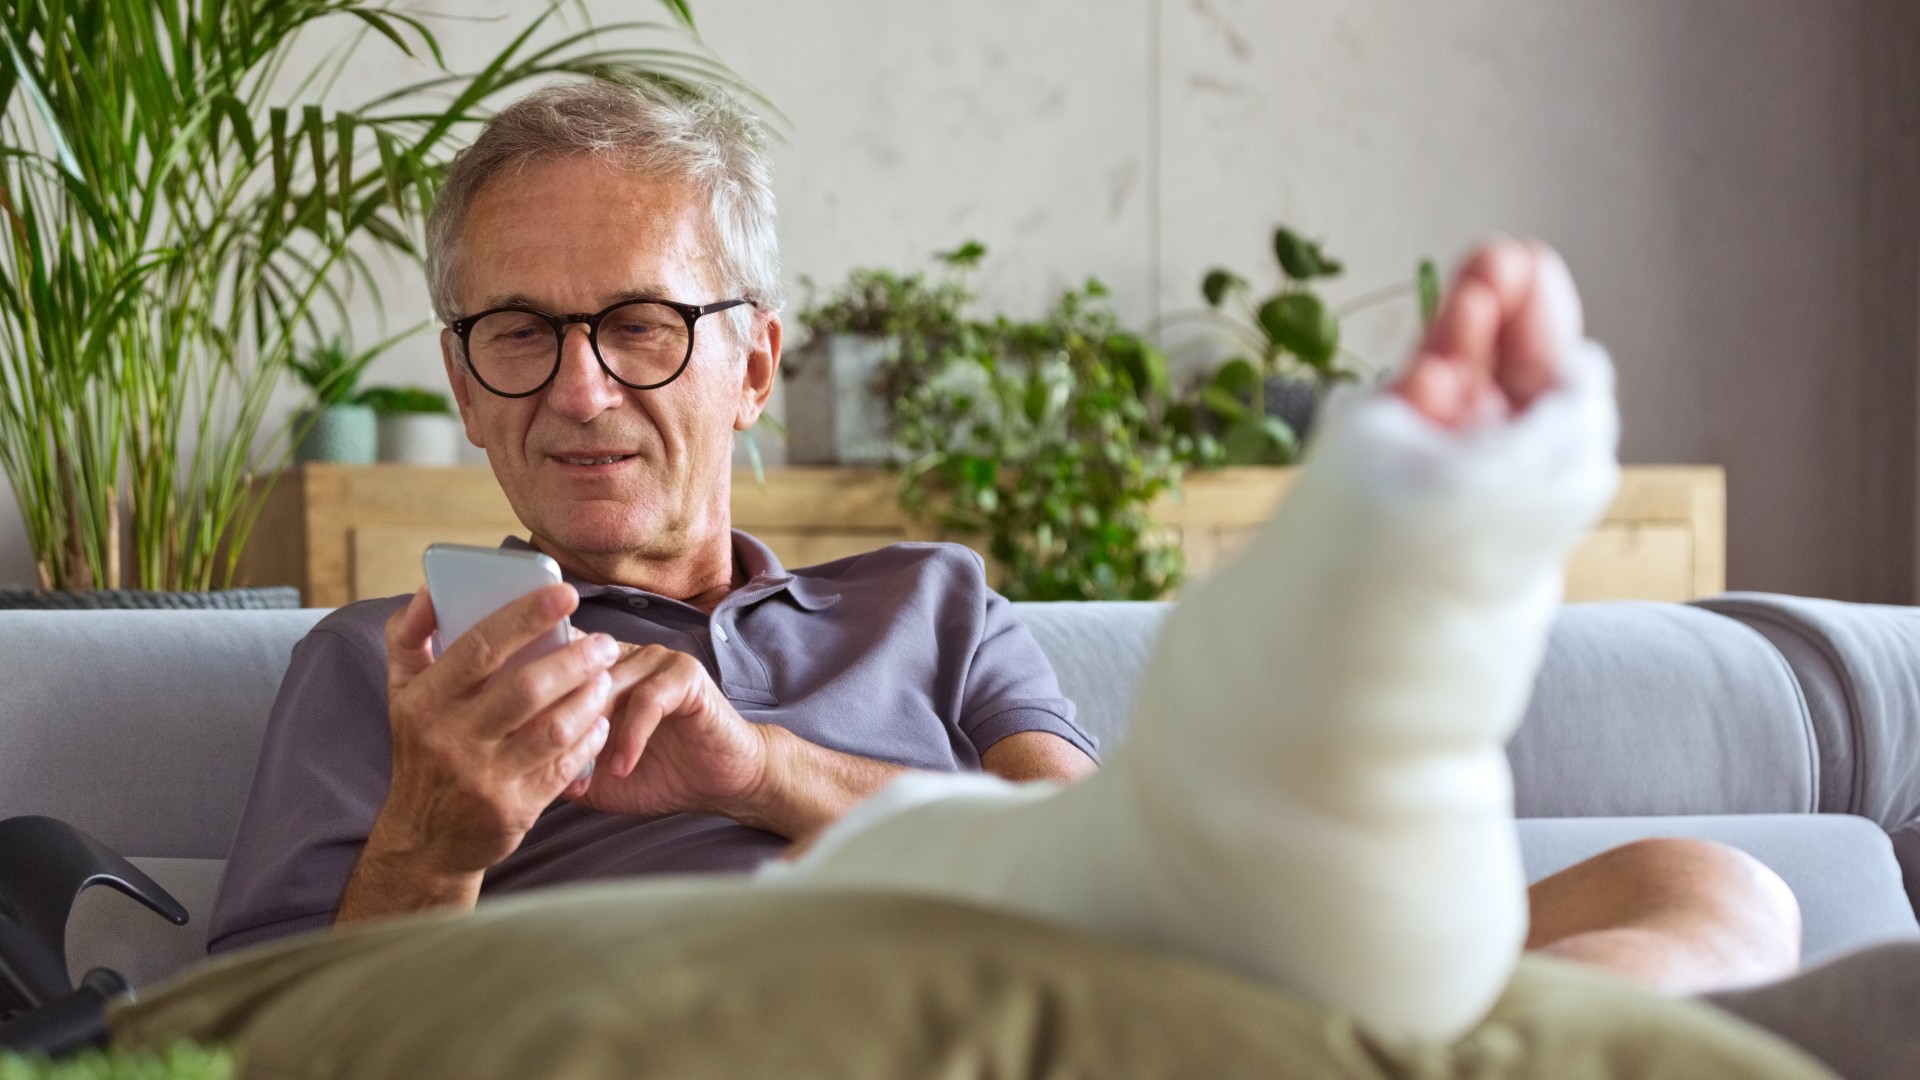 An elderly man with a broken leg at home